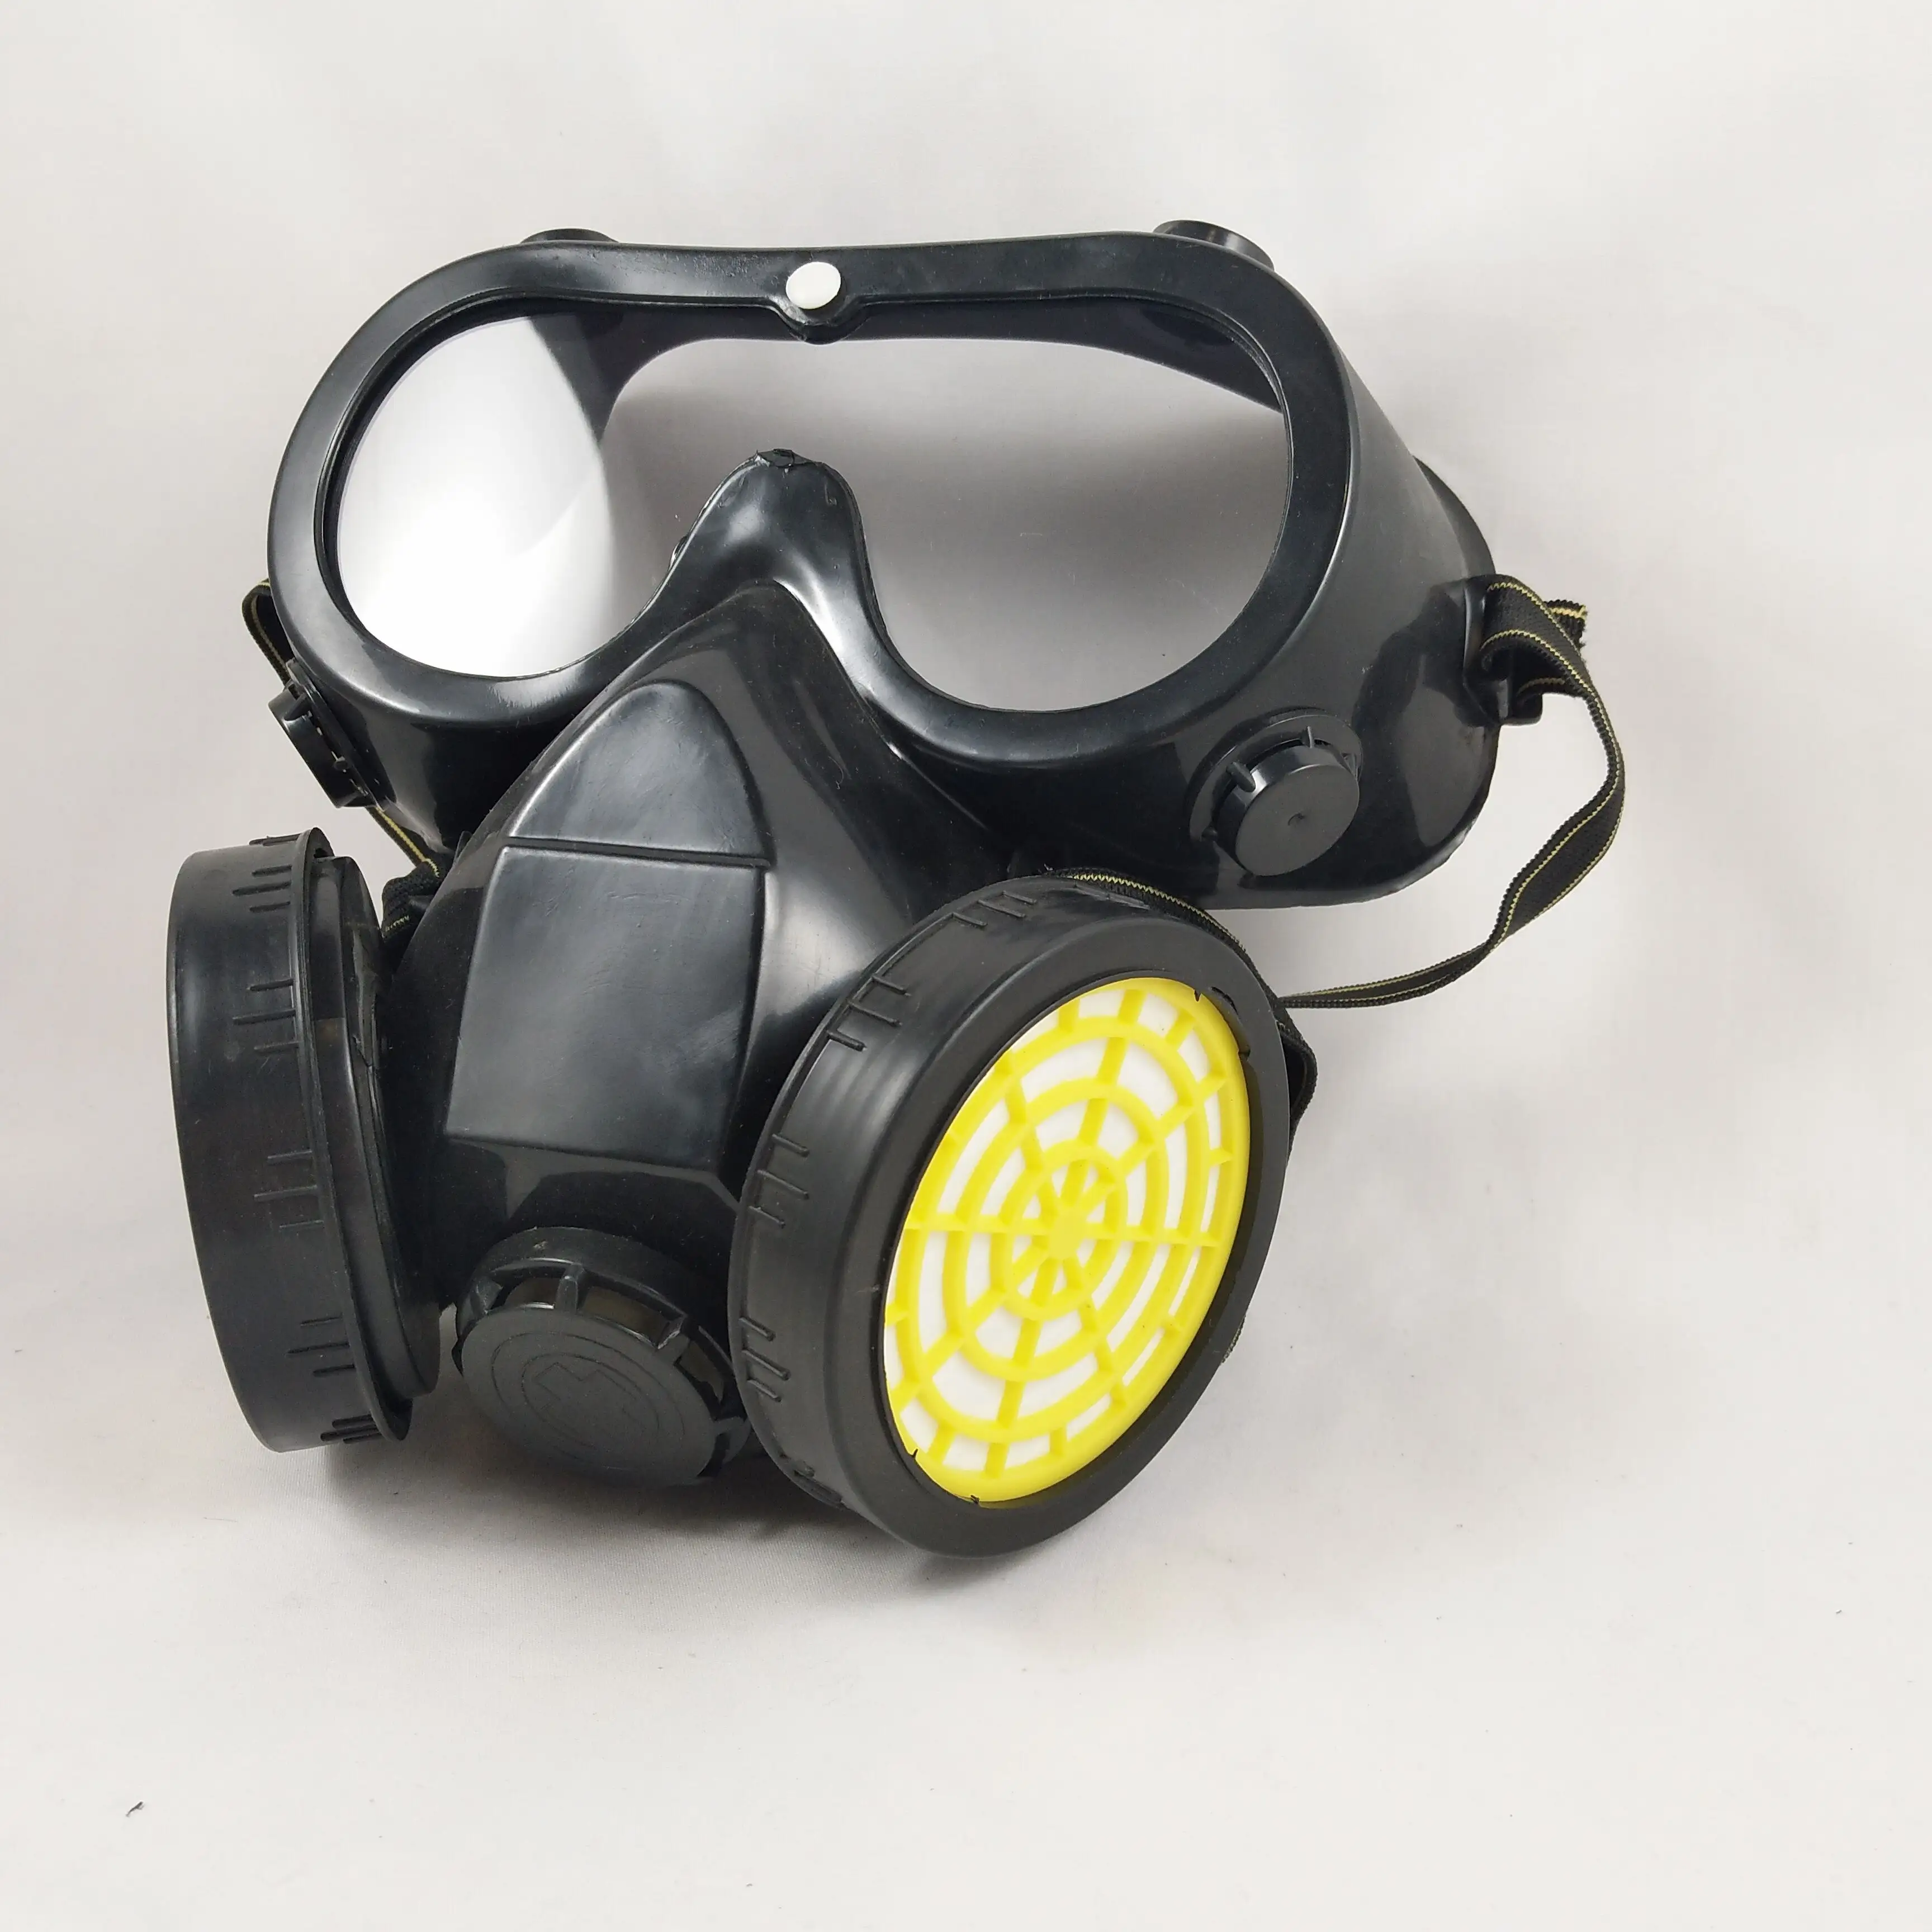 Masque respiratoire réutilisable avec filtre à charbon actif anti-poussière et gaz chimique avec lunettes de sécurité